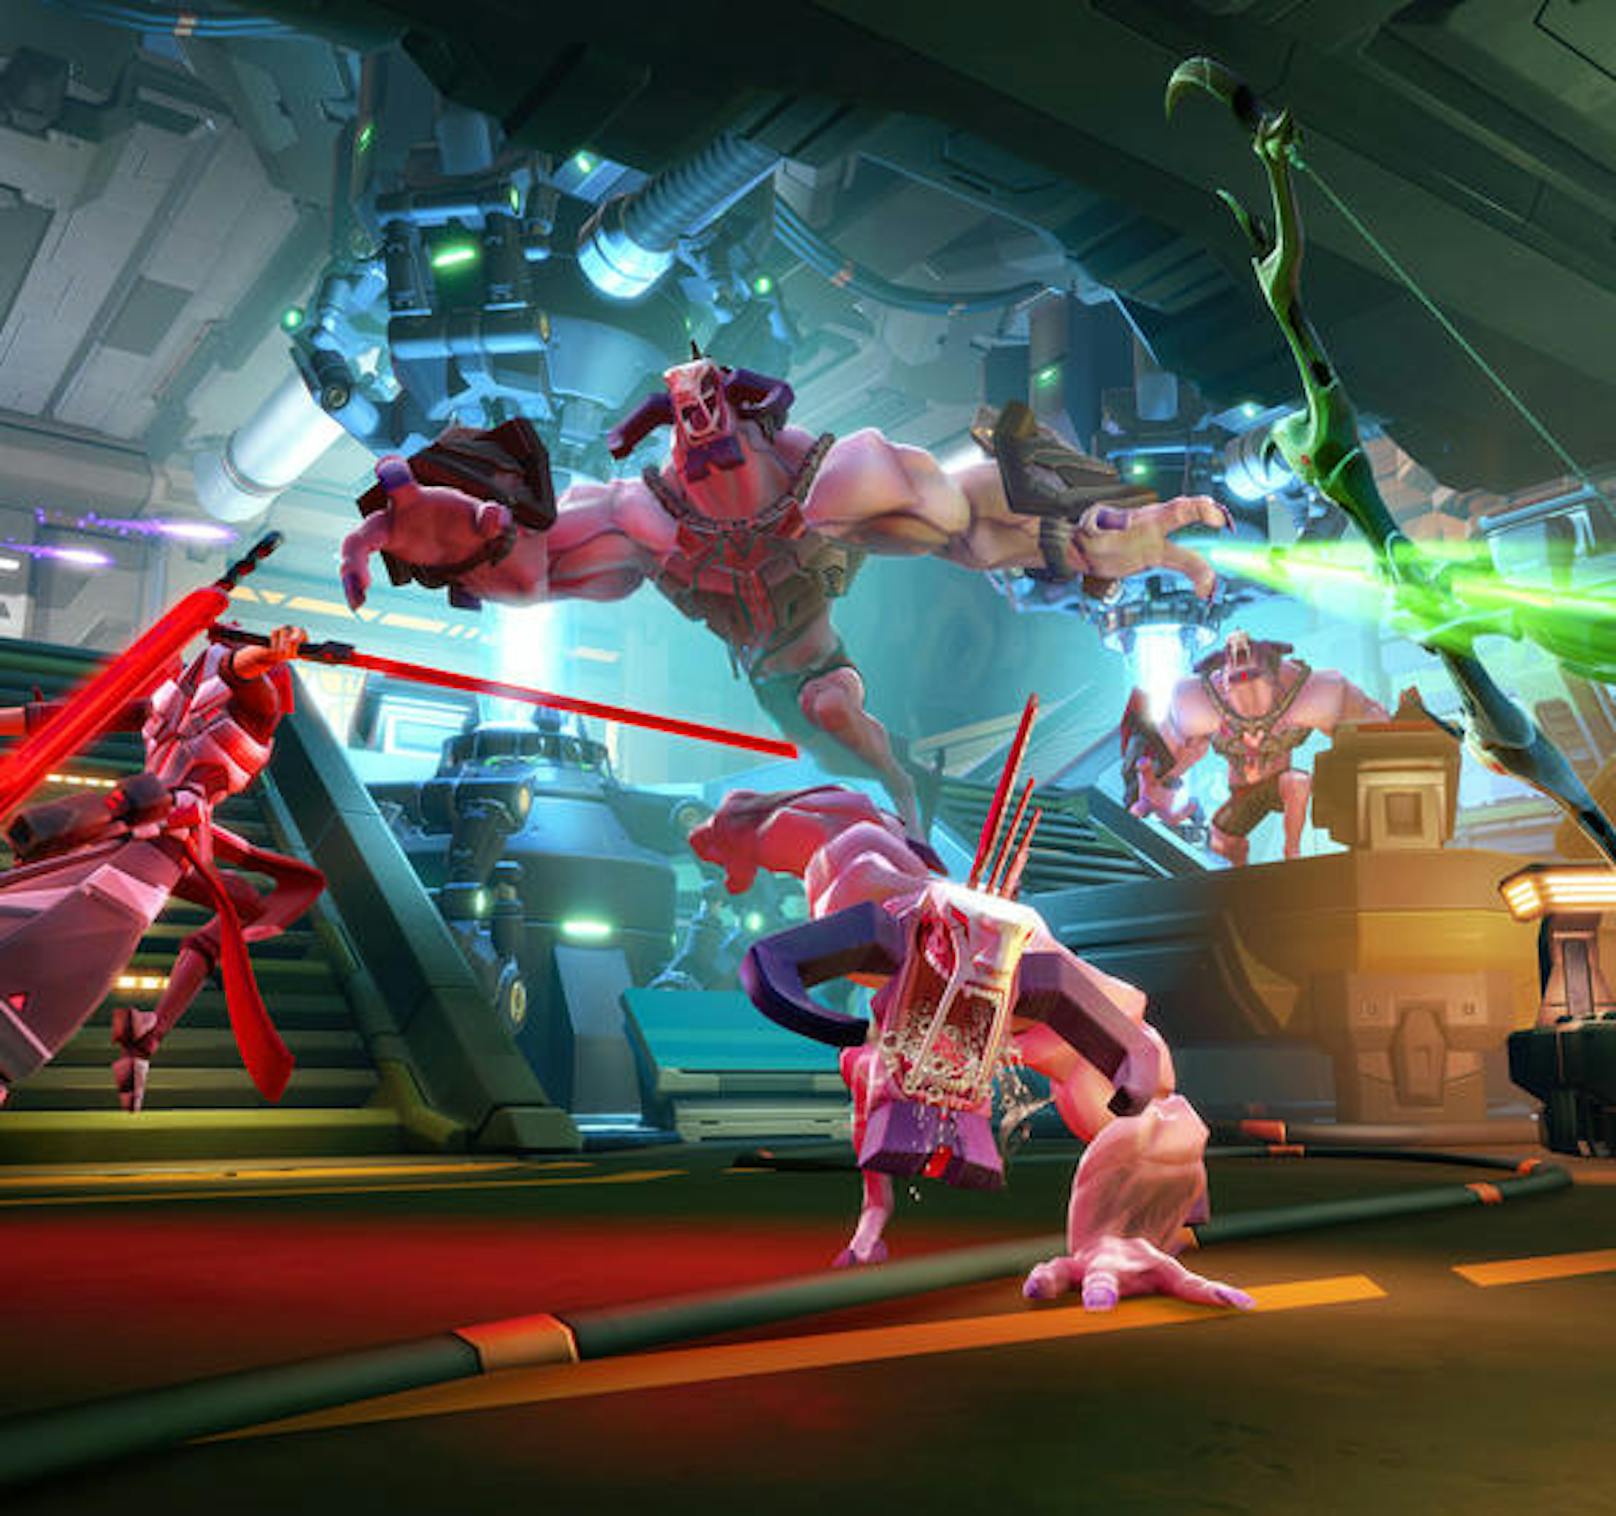 Gearbox hat mit Battleborn erneut einen Shooter herausgebracht, der für lange Spiele-Nächte sorgen wird. Die abwechslungsreichen Helden und unterschiedlichen Charakter laden zum stundenlangen Spielespaß ein.